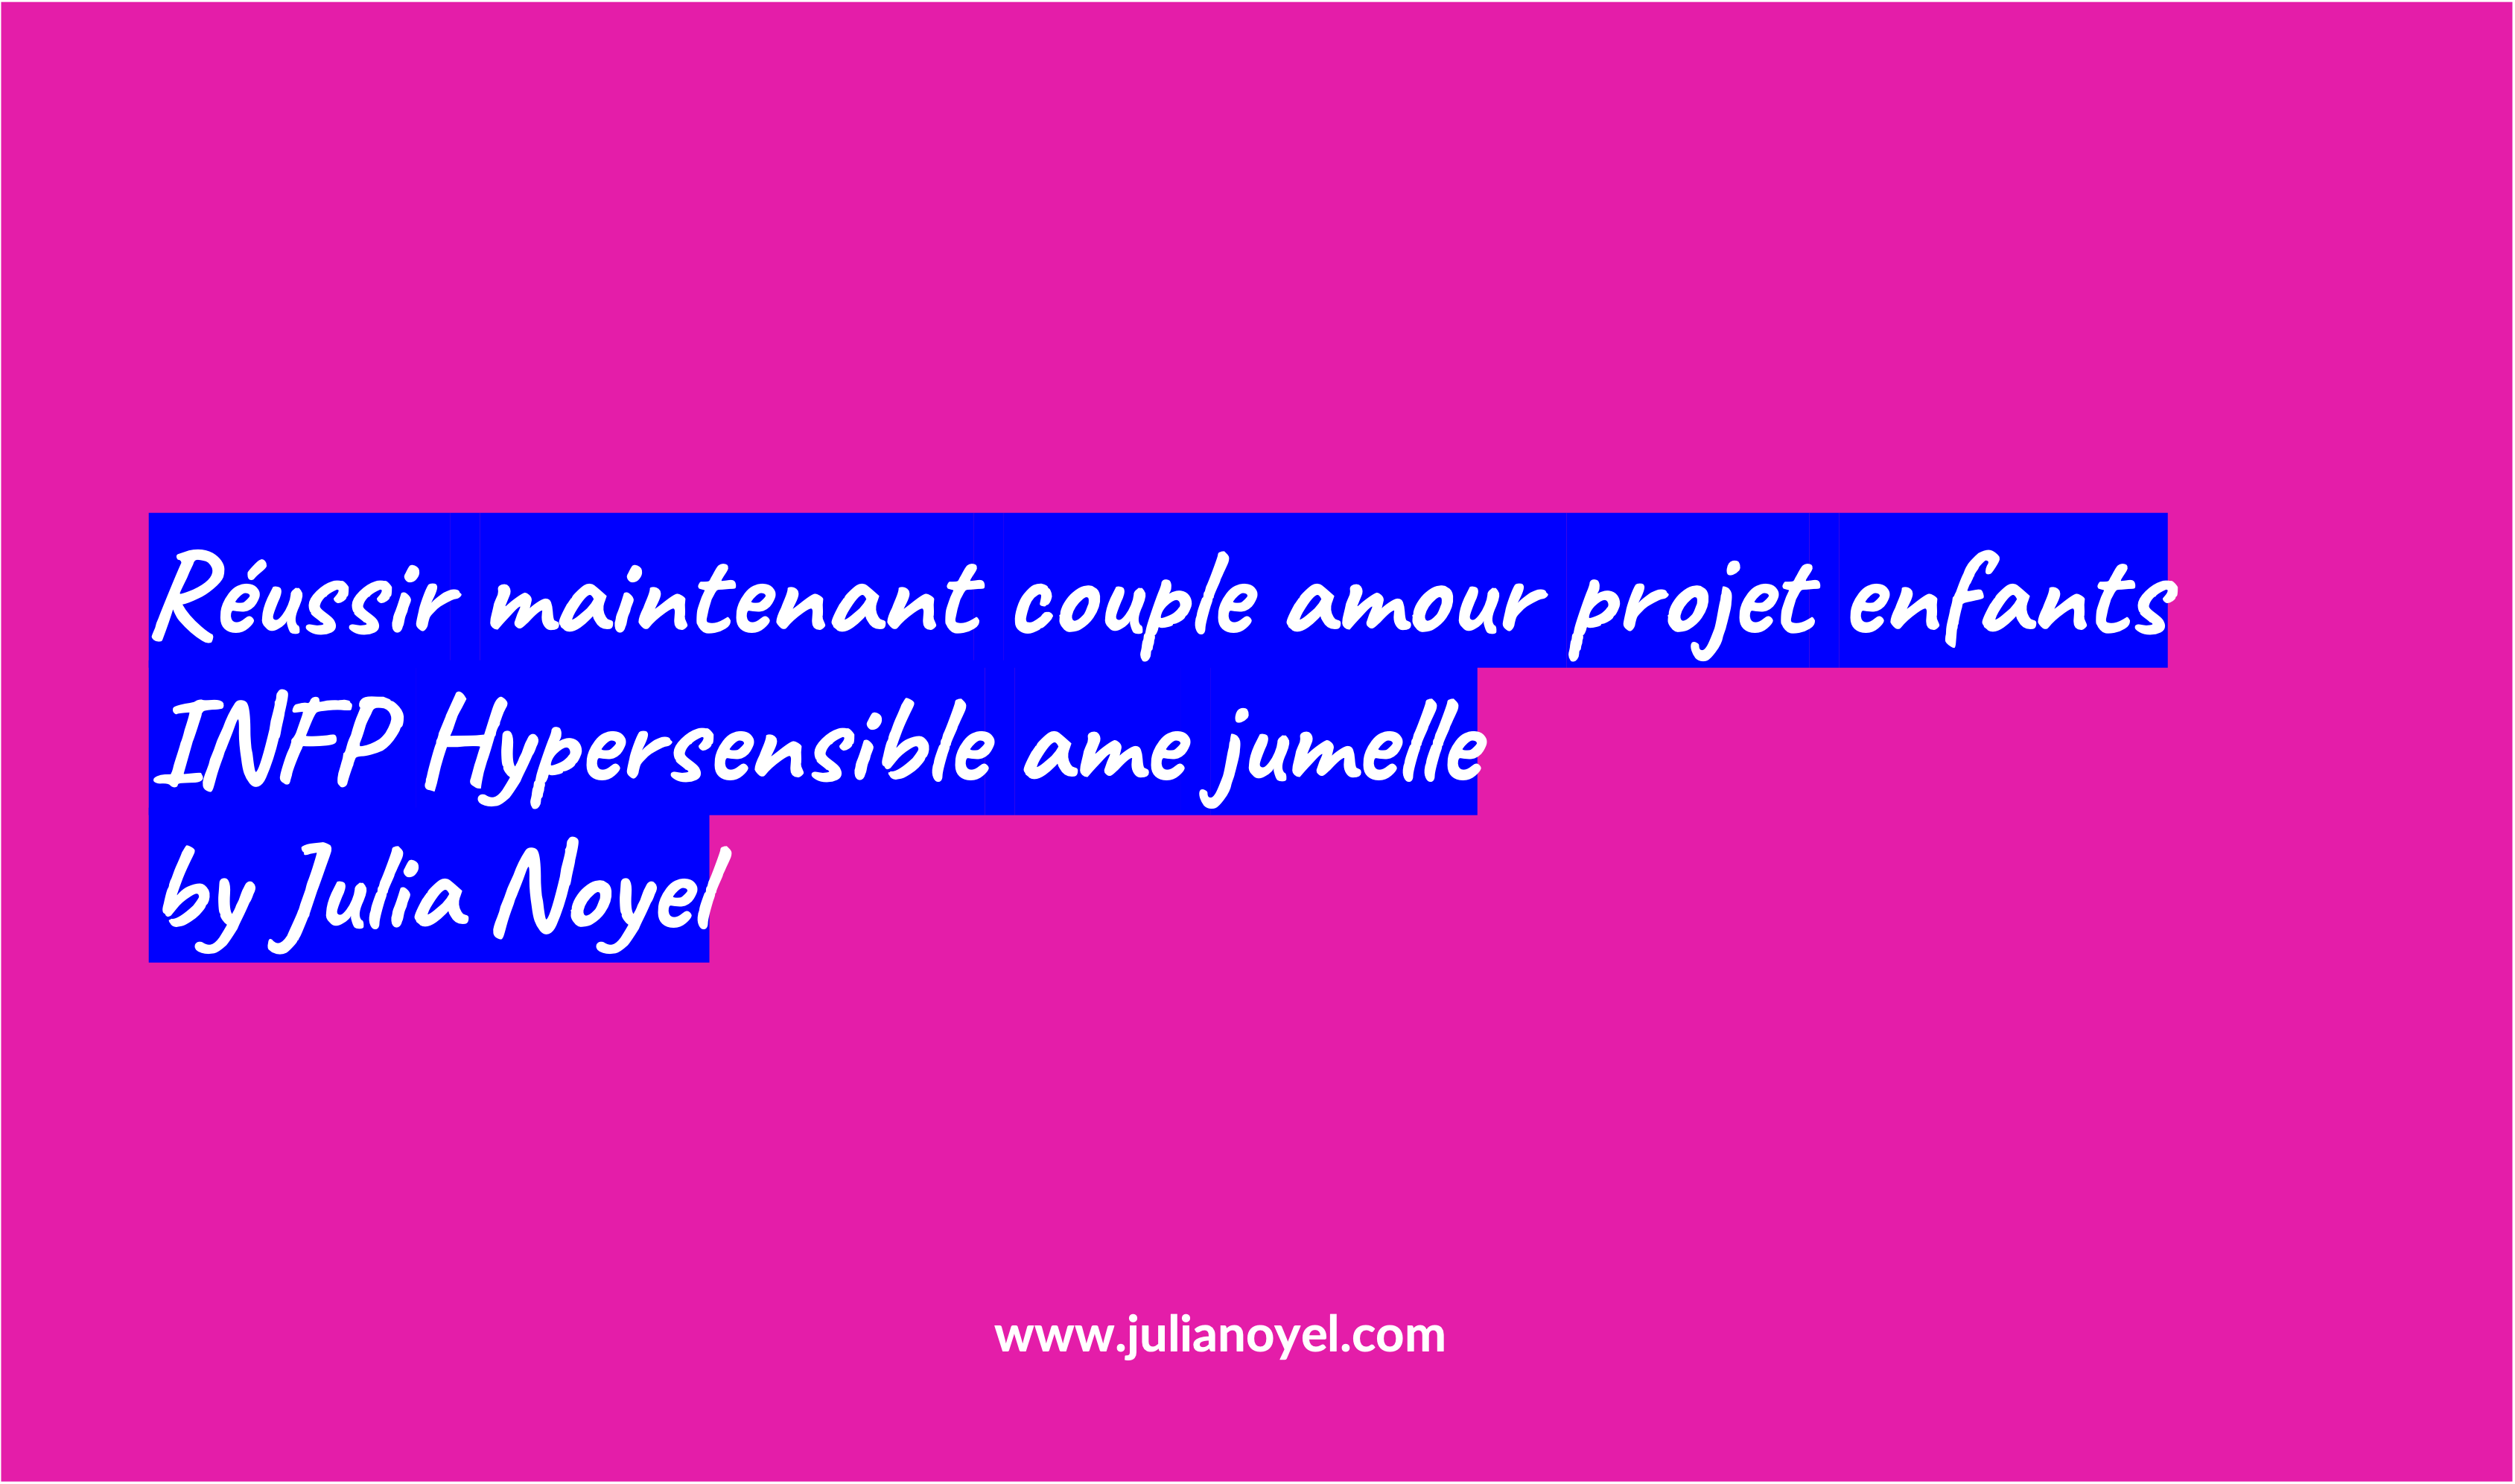 Réussir maintenant couple amour projet enfants INFP Hypersensible ame jumelle by Julia Noyel